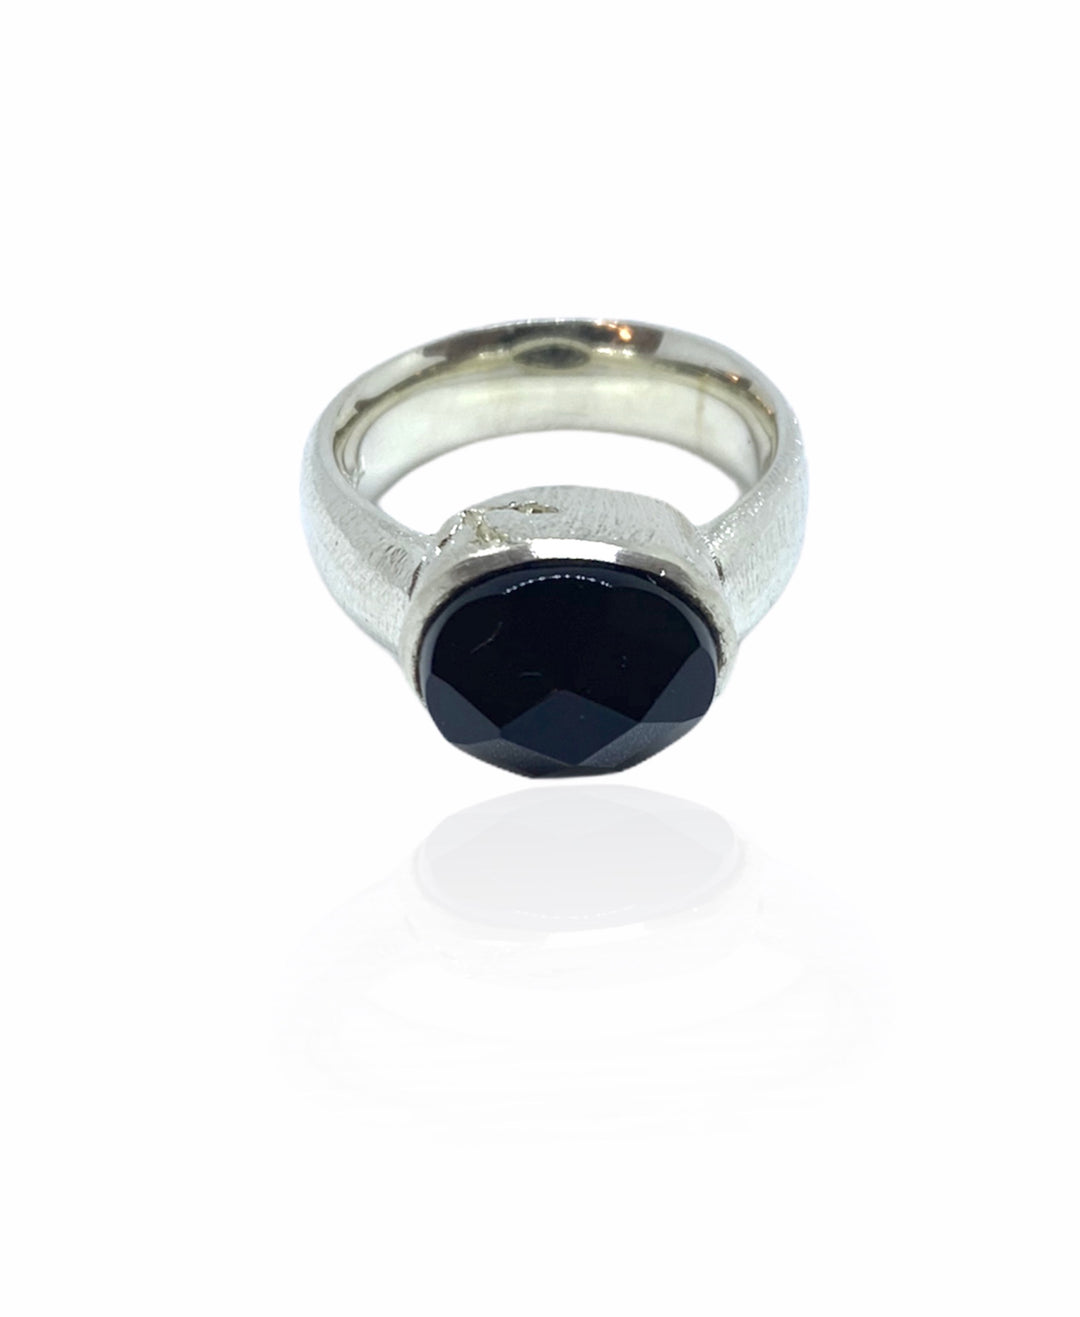 K&Z - Sølv ring med sort facet slebet onyx